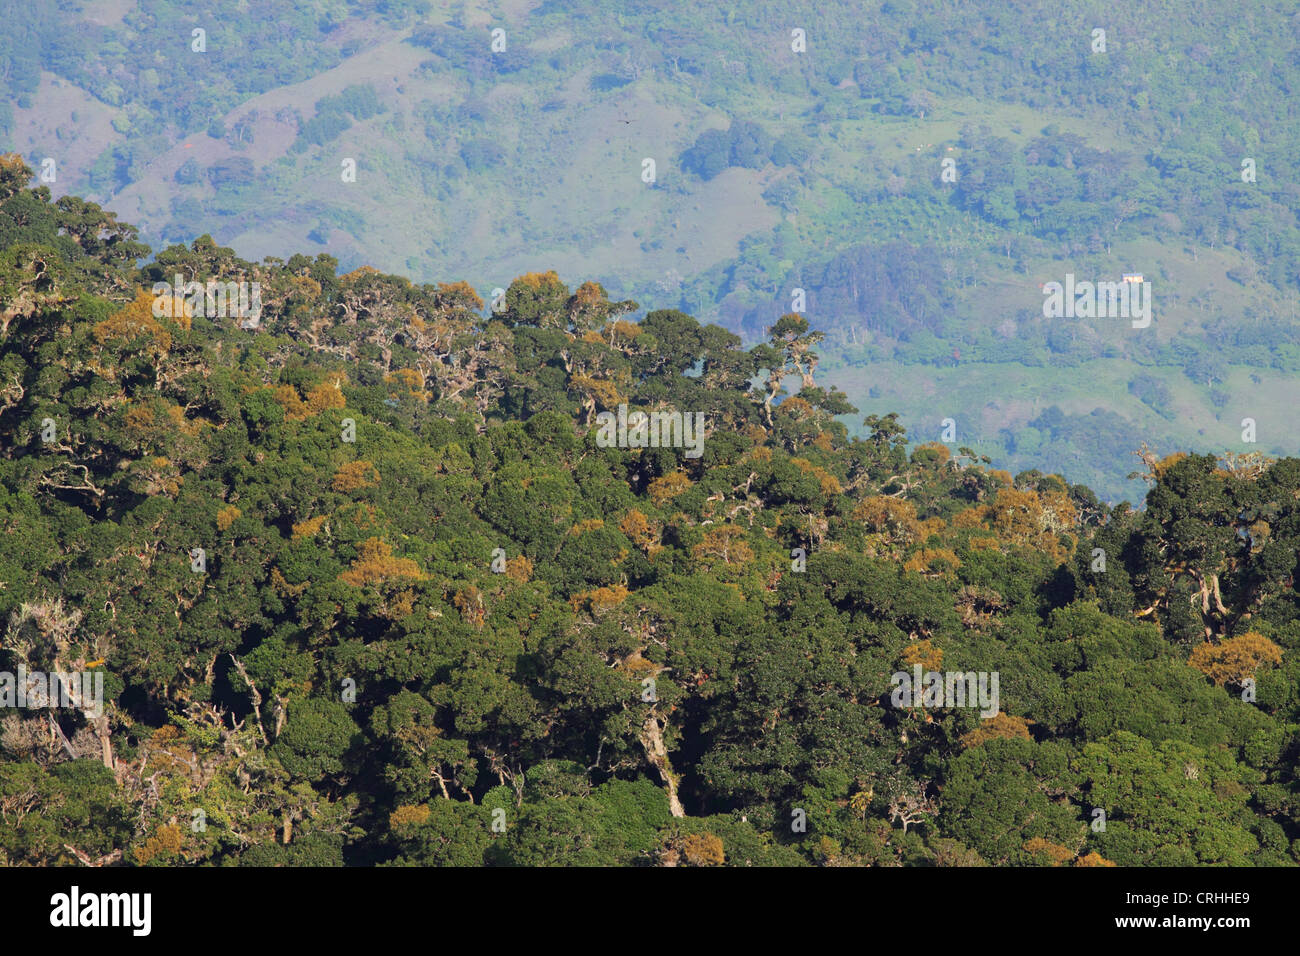 Au-delà des terres déboisées de chênes (Quercus costaricensis) dans la forêt de nuages sur le Cerro de la Muerte Mountain, au sud-est de San José. Banque D'Images